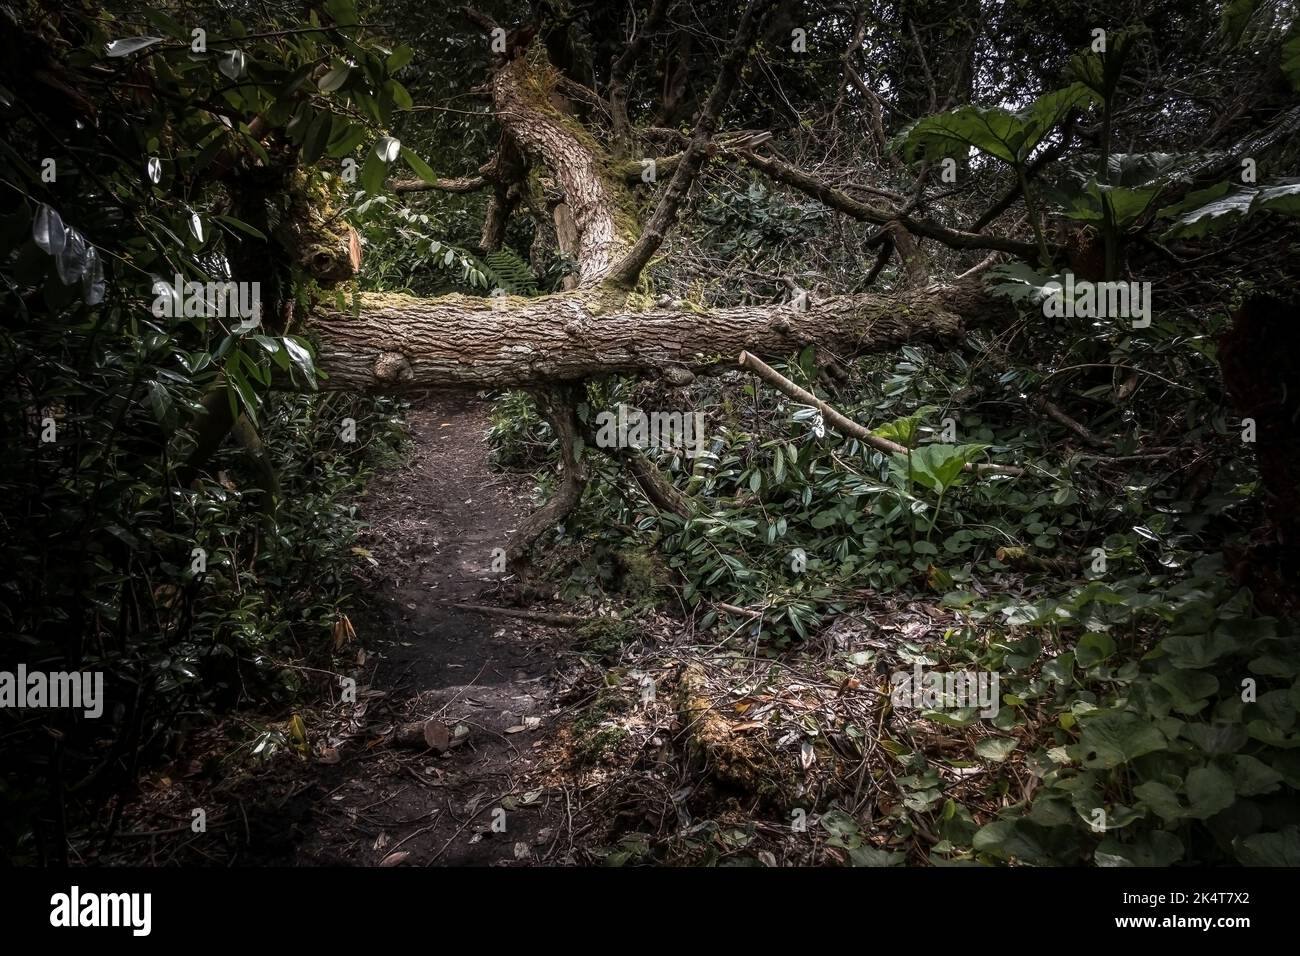 Un arbre est tombé sur un sentier dans le jardin sauvage subtropical Penjjick à Cornwall. Penjerrick Garden est reconnu comme le véritable jardin de la jungle de Cornmurals Banque D'Images